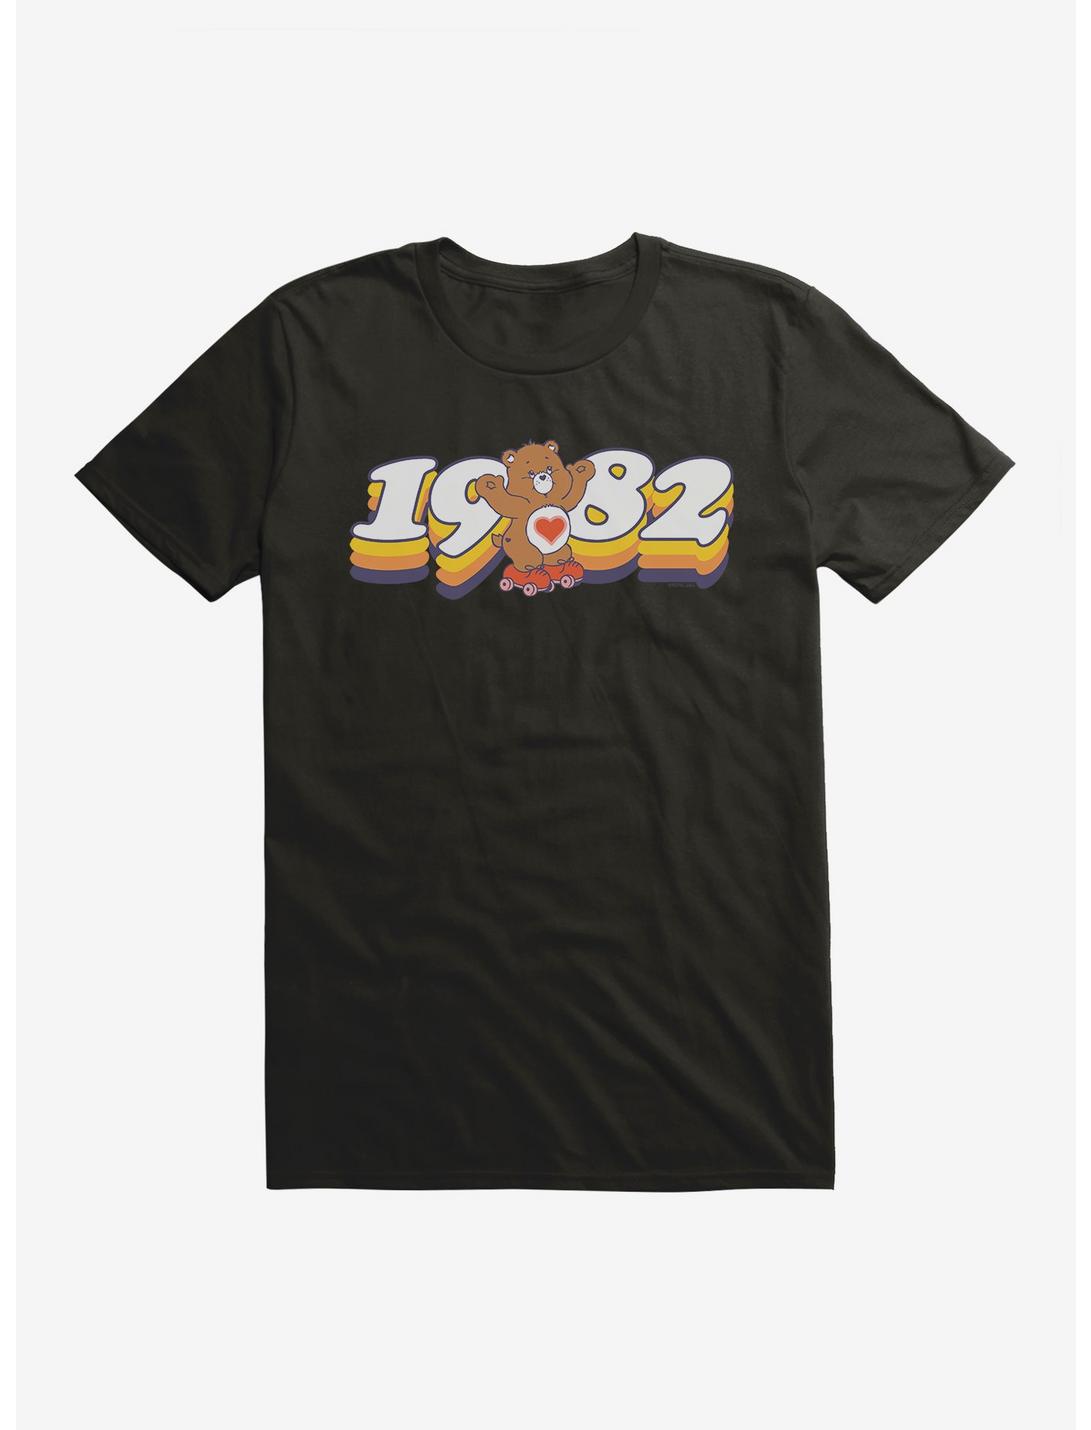 Care Bears Skating Since 1982 T-Shirt, , hi-res